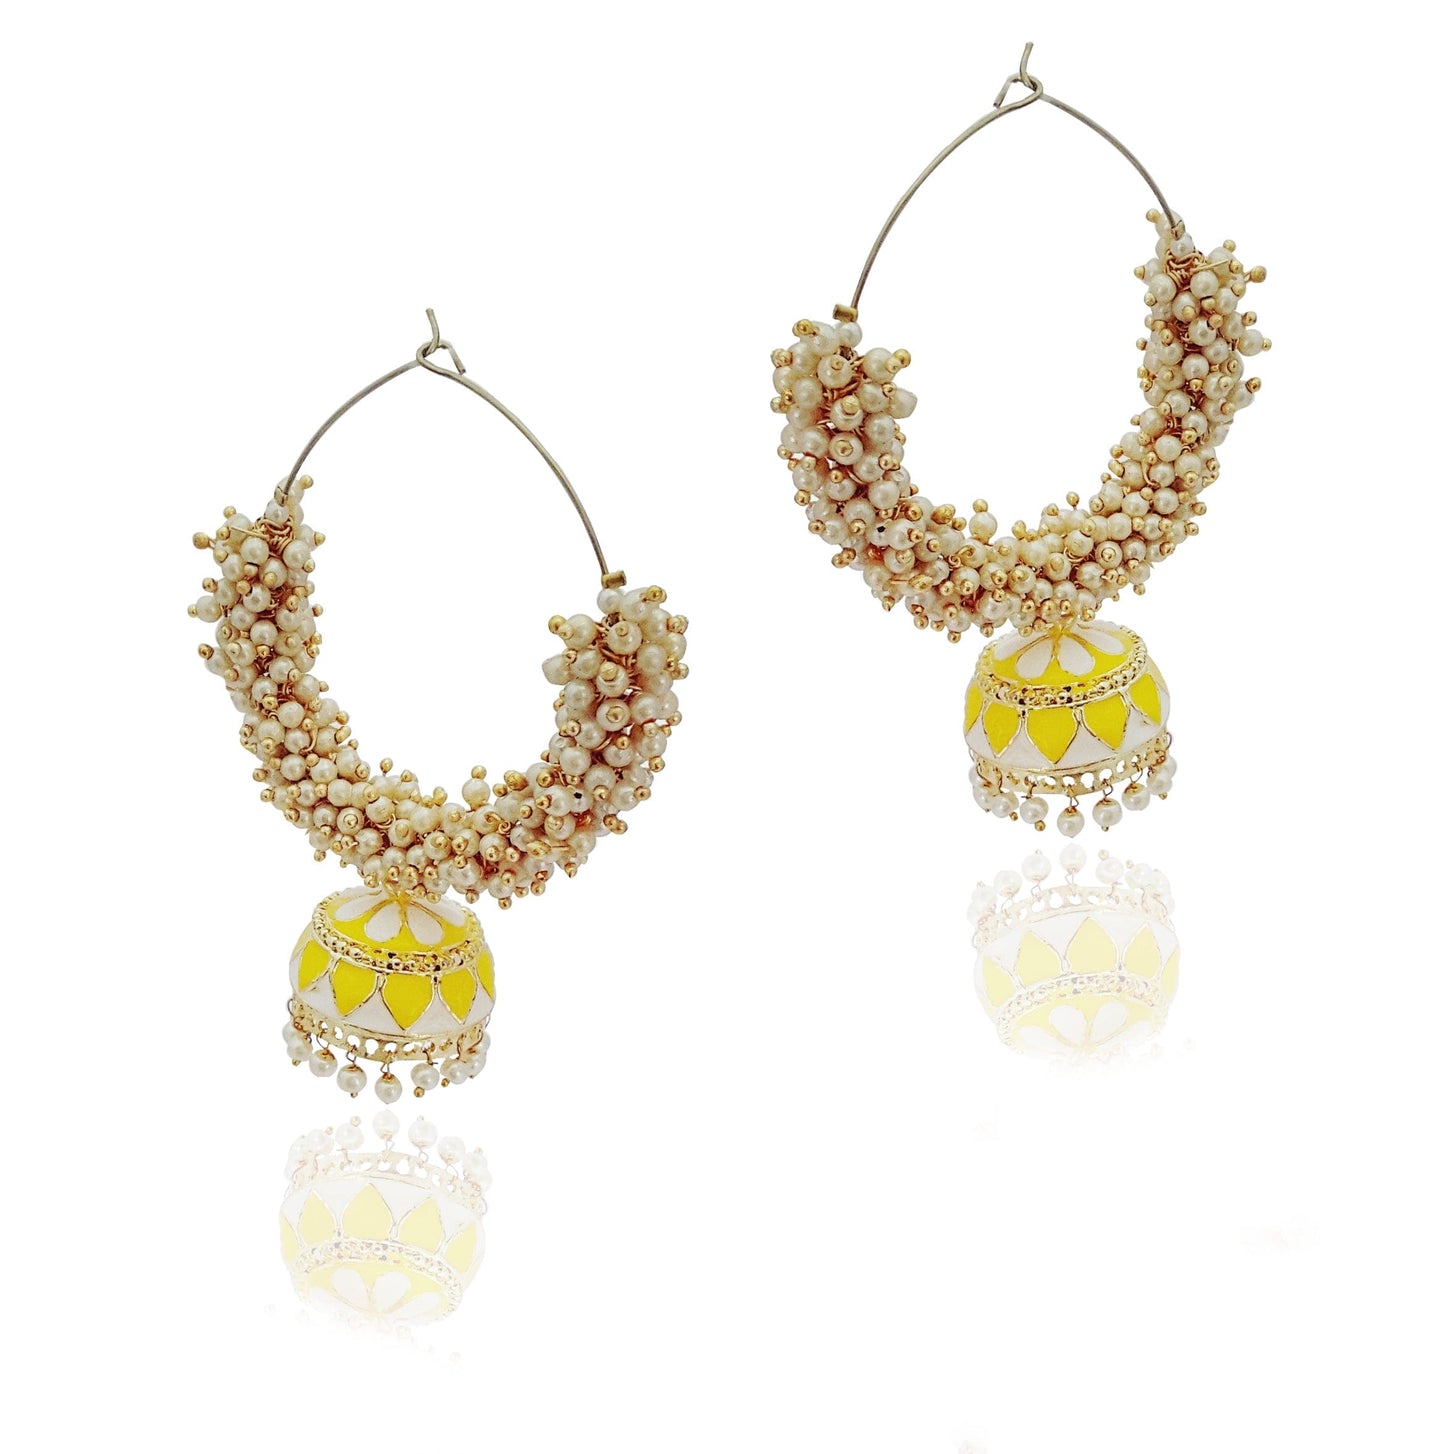 Moonstruck Gold Pearl Hoops Fashion Earrings For Women (Yellow) - www.MoonstruckINC.com